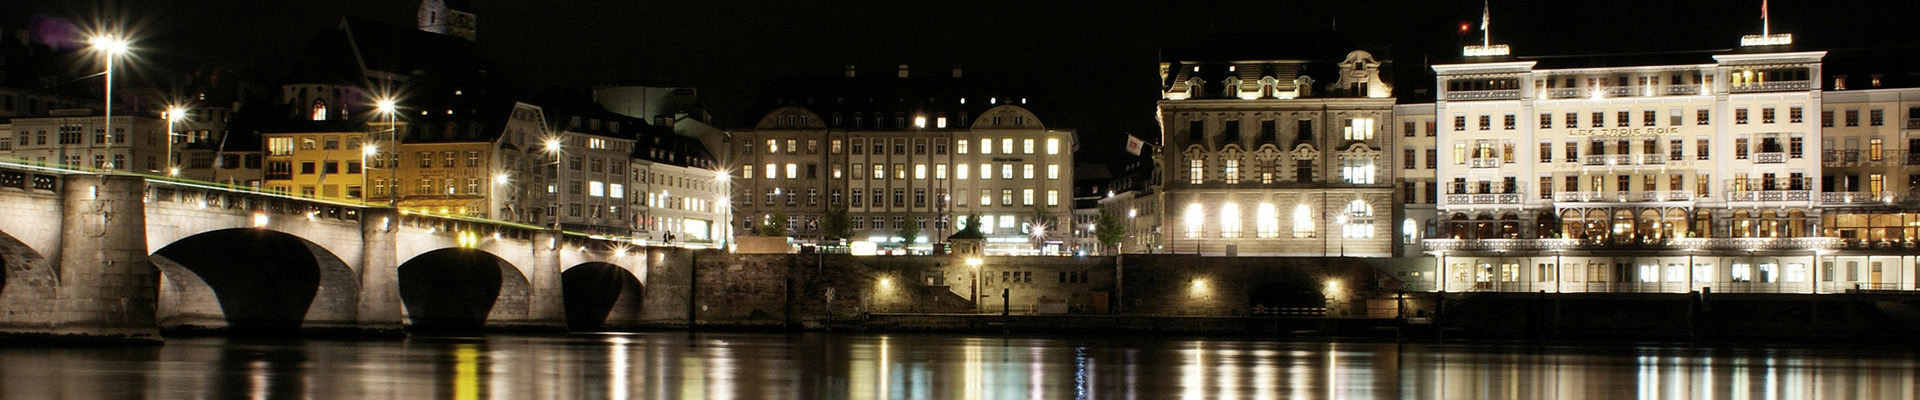 Rheinufer bei Nacht